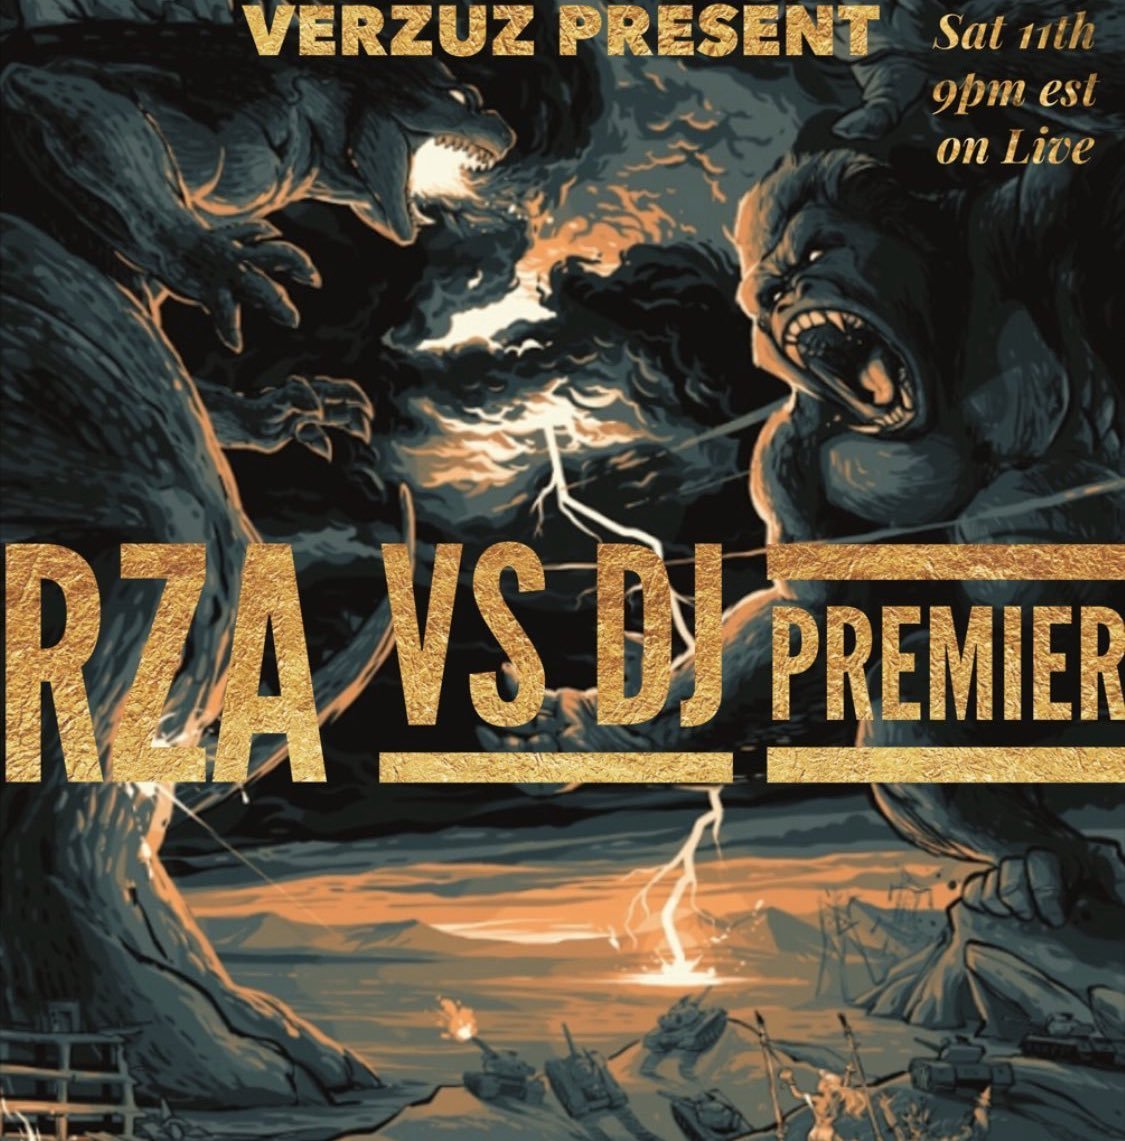 *  @RZA  #VERZUZ  @REALDJPREMIER Scorecard Thread *